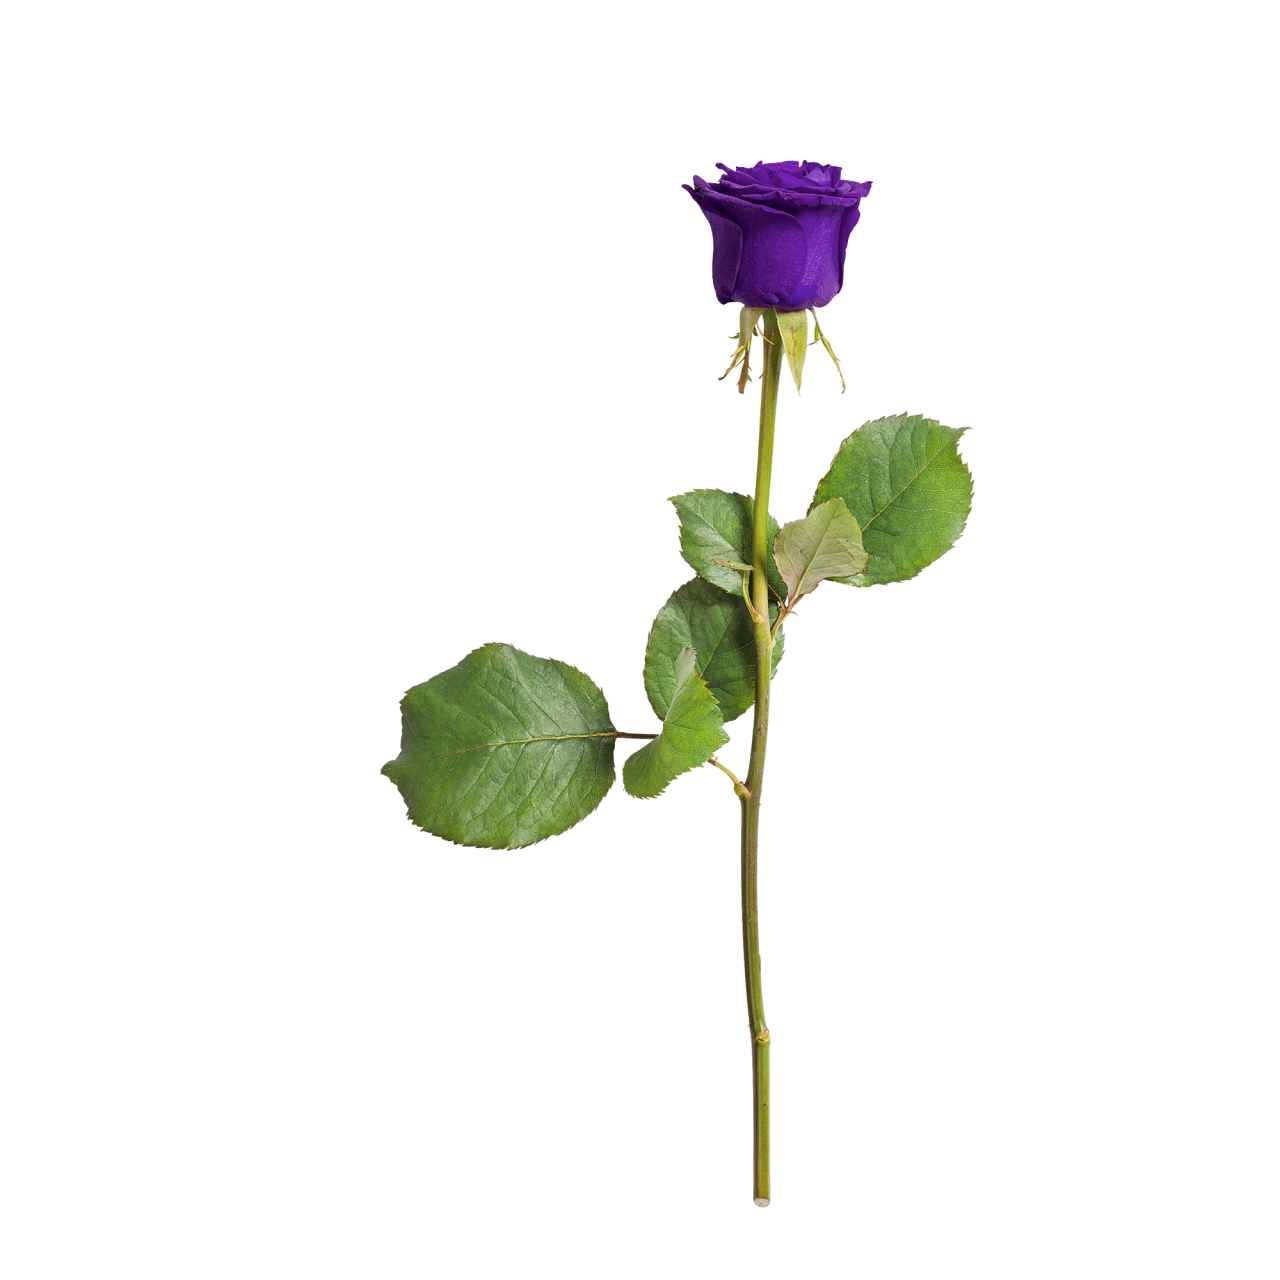 绿色枝叶紫色花朵自然玫瑰植物高清图片下载